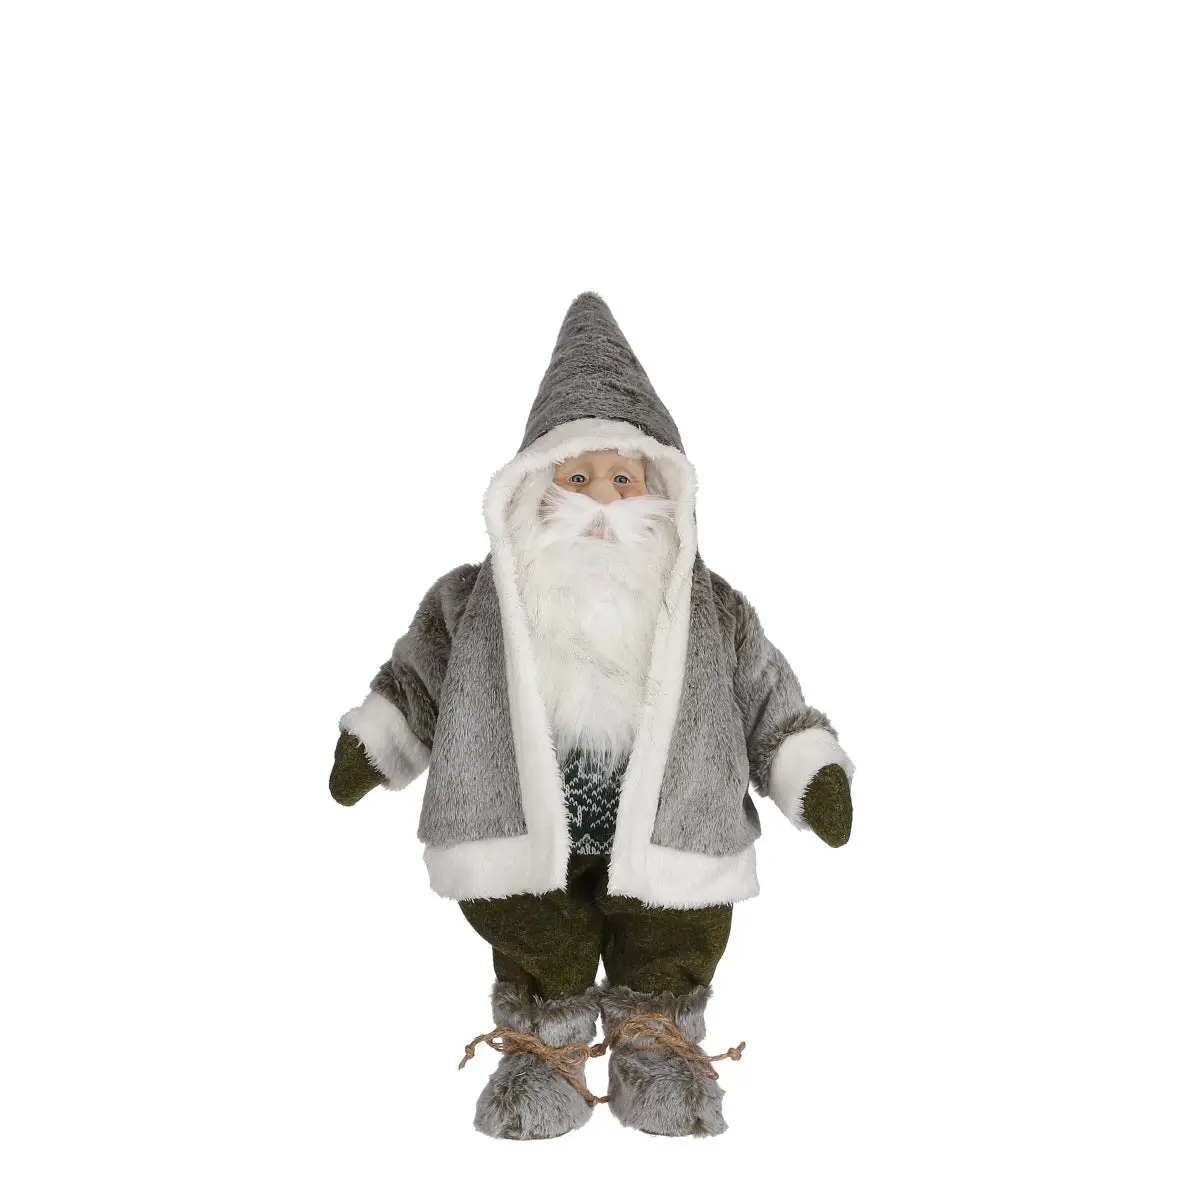 preispolitik Weihnachtsfigur Gnome